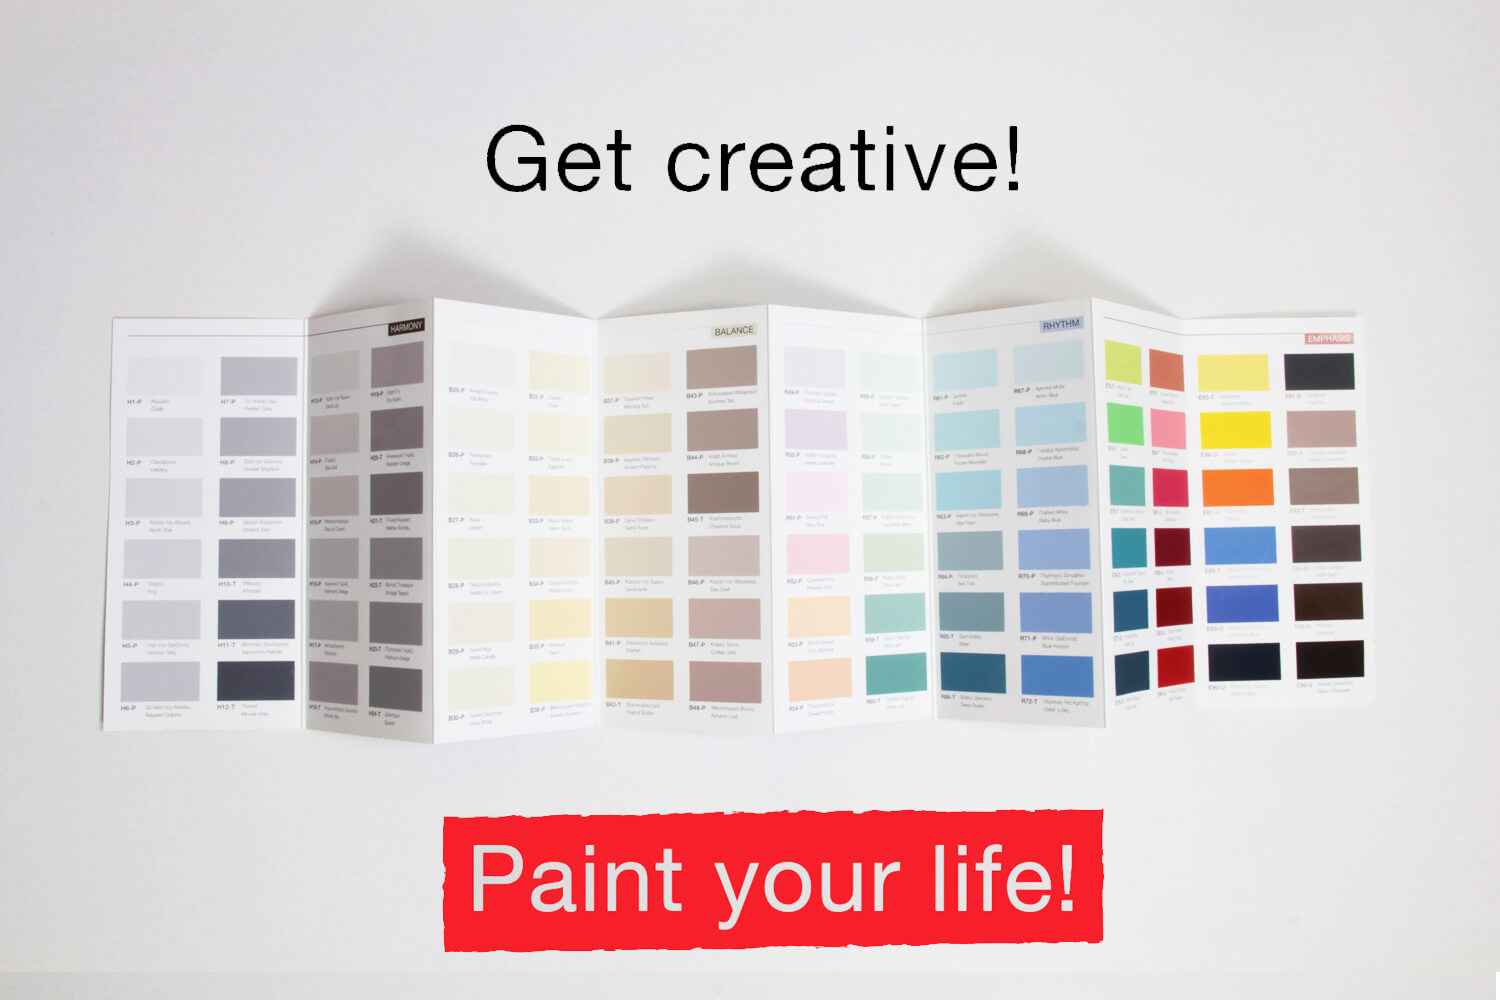 Get Creative! Paint your Life! Νέο χρωματολόγιο από την ER-LAC!